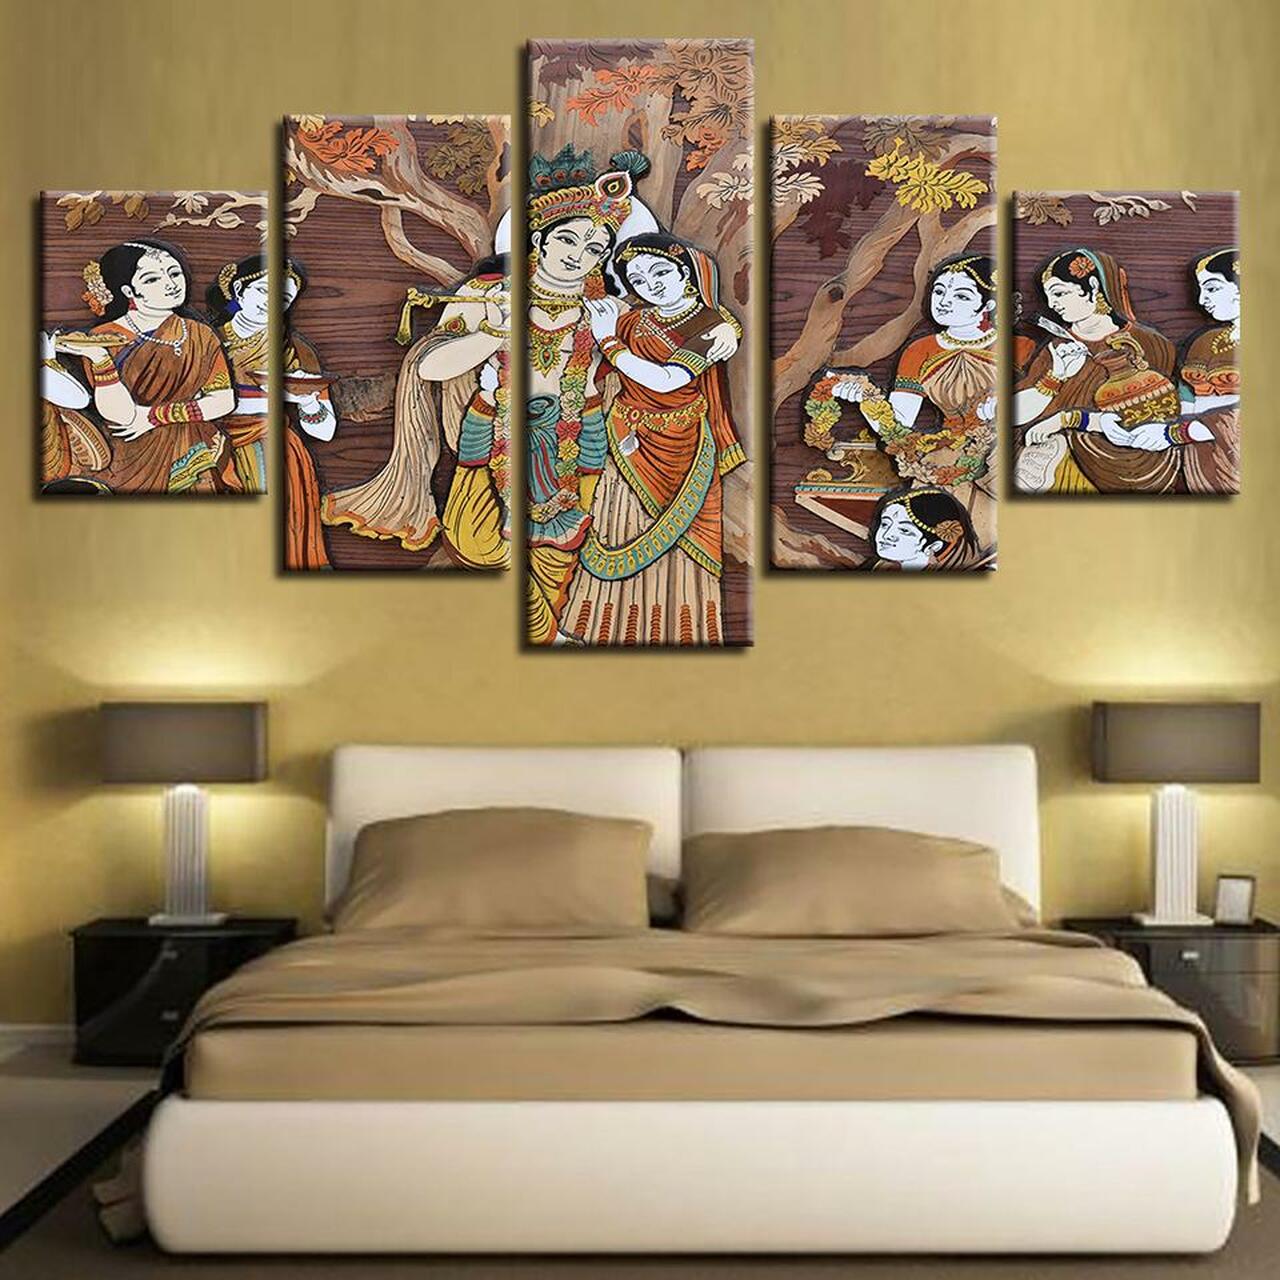 krishna and radha ras leela 5 pices peinture sur toile impression sur toile toile art pour la dcoration intrieurejcnv8